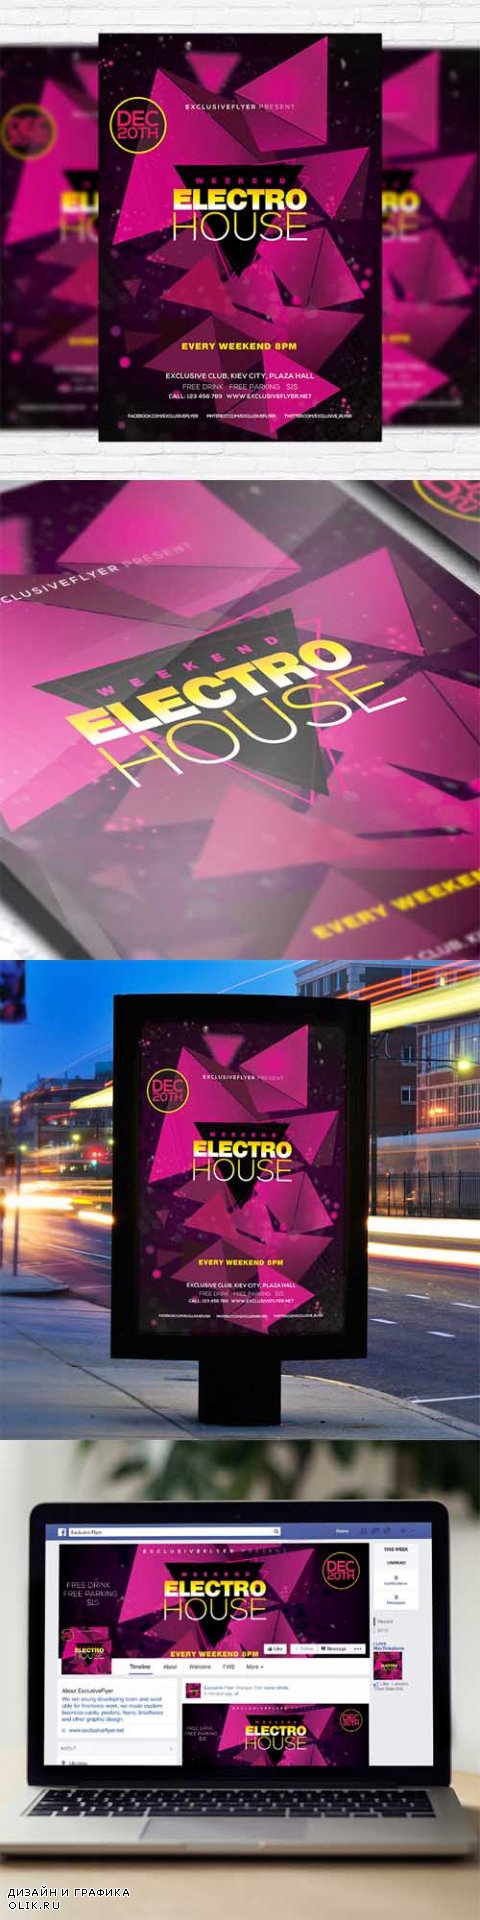 Flyer Template - Electro House + Facebook Cover